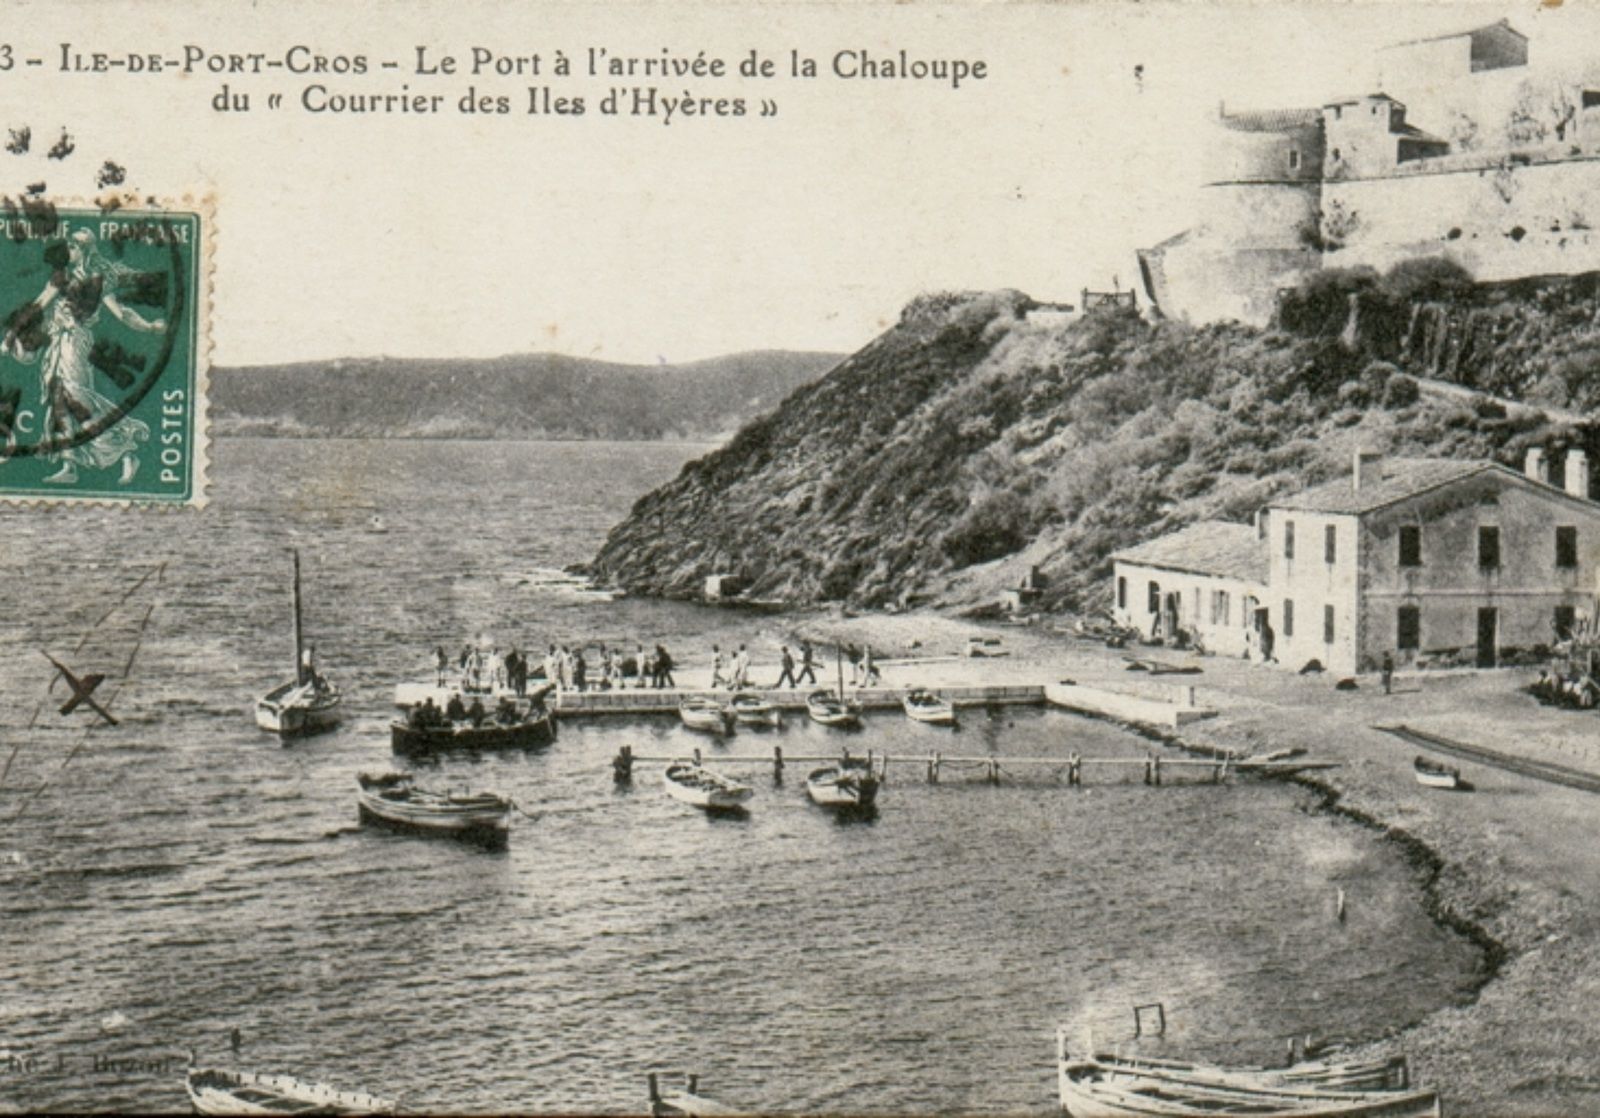 Cartes Postales des îles au début du XXe siècle